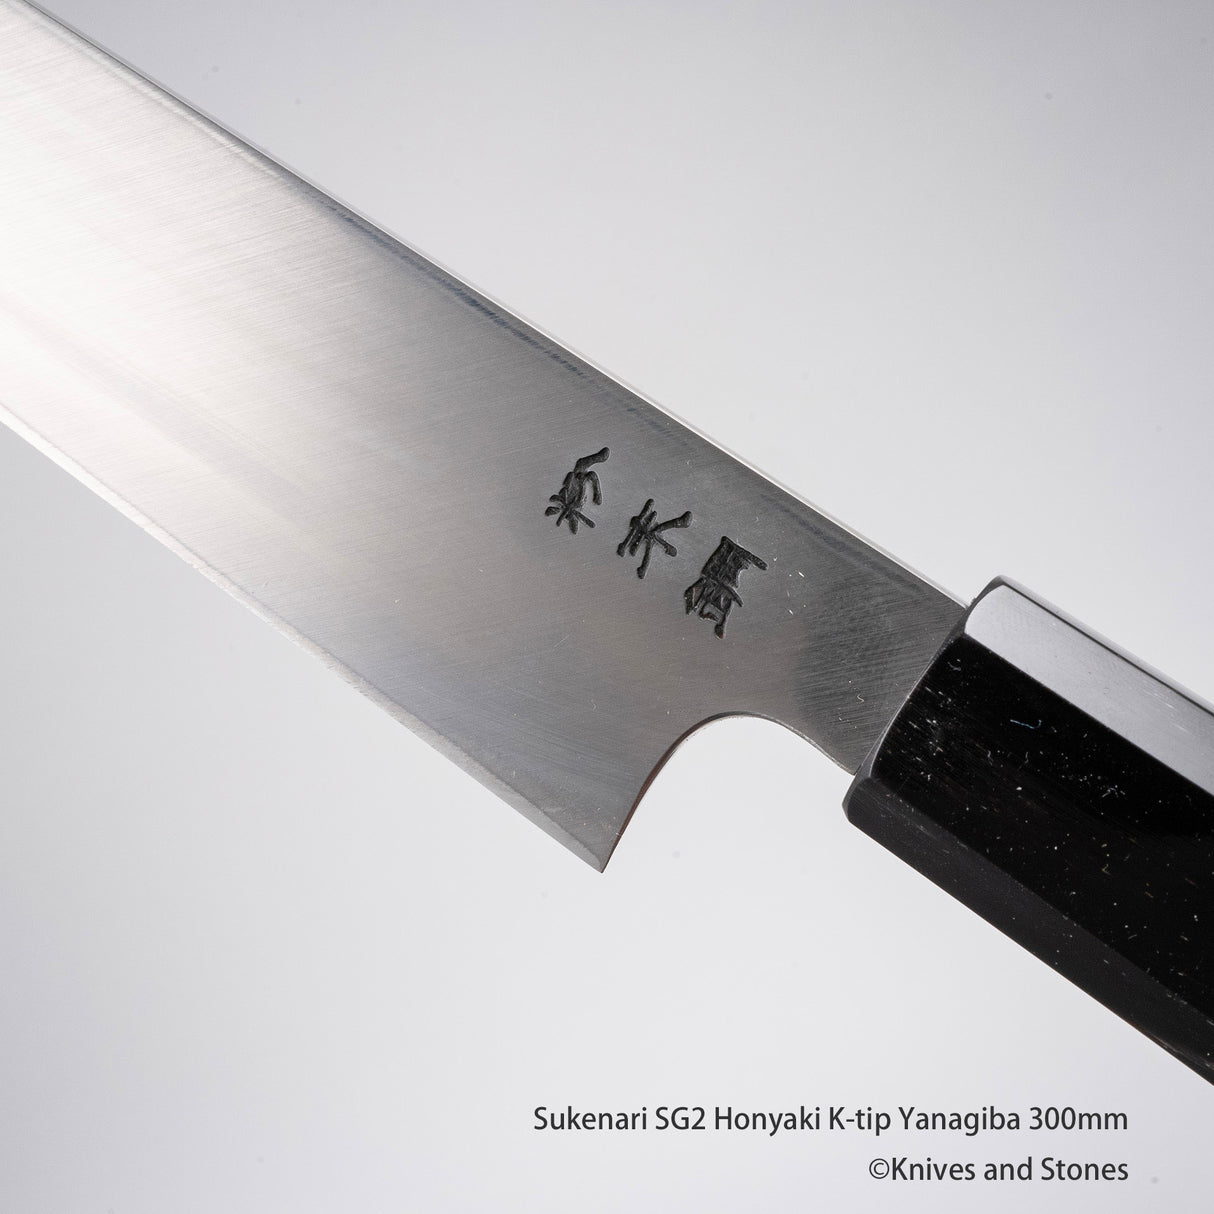 Sukenari SG2 Honyaki K-tip Yanagiba 300mm with Saya